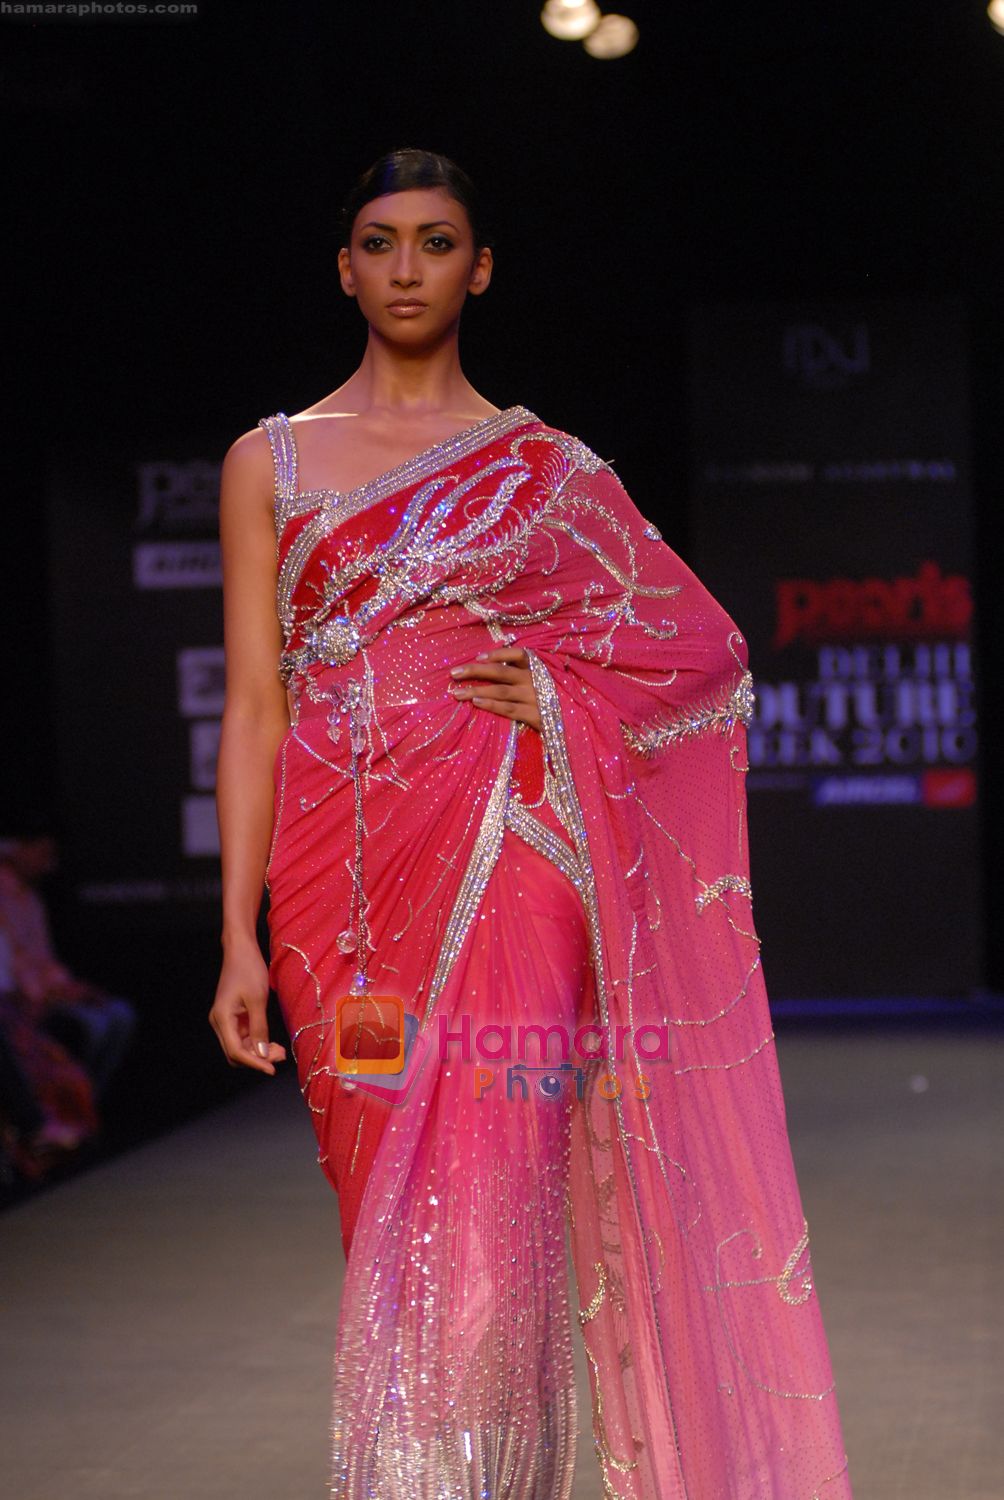 Designer Raakesh Agarvwal Couture presents Premi�re Classe 4